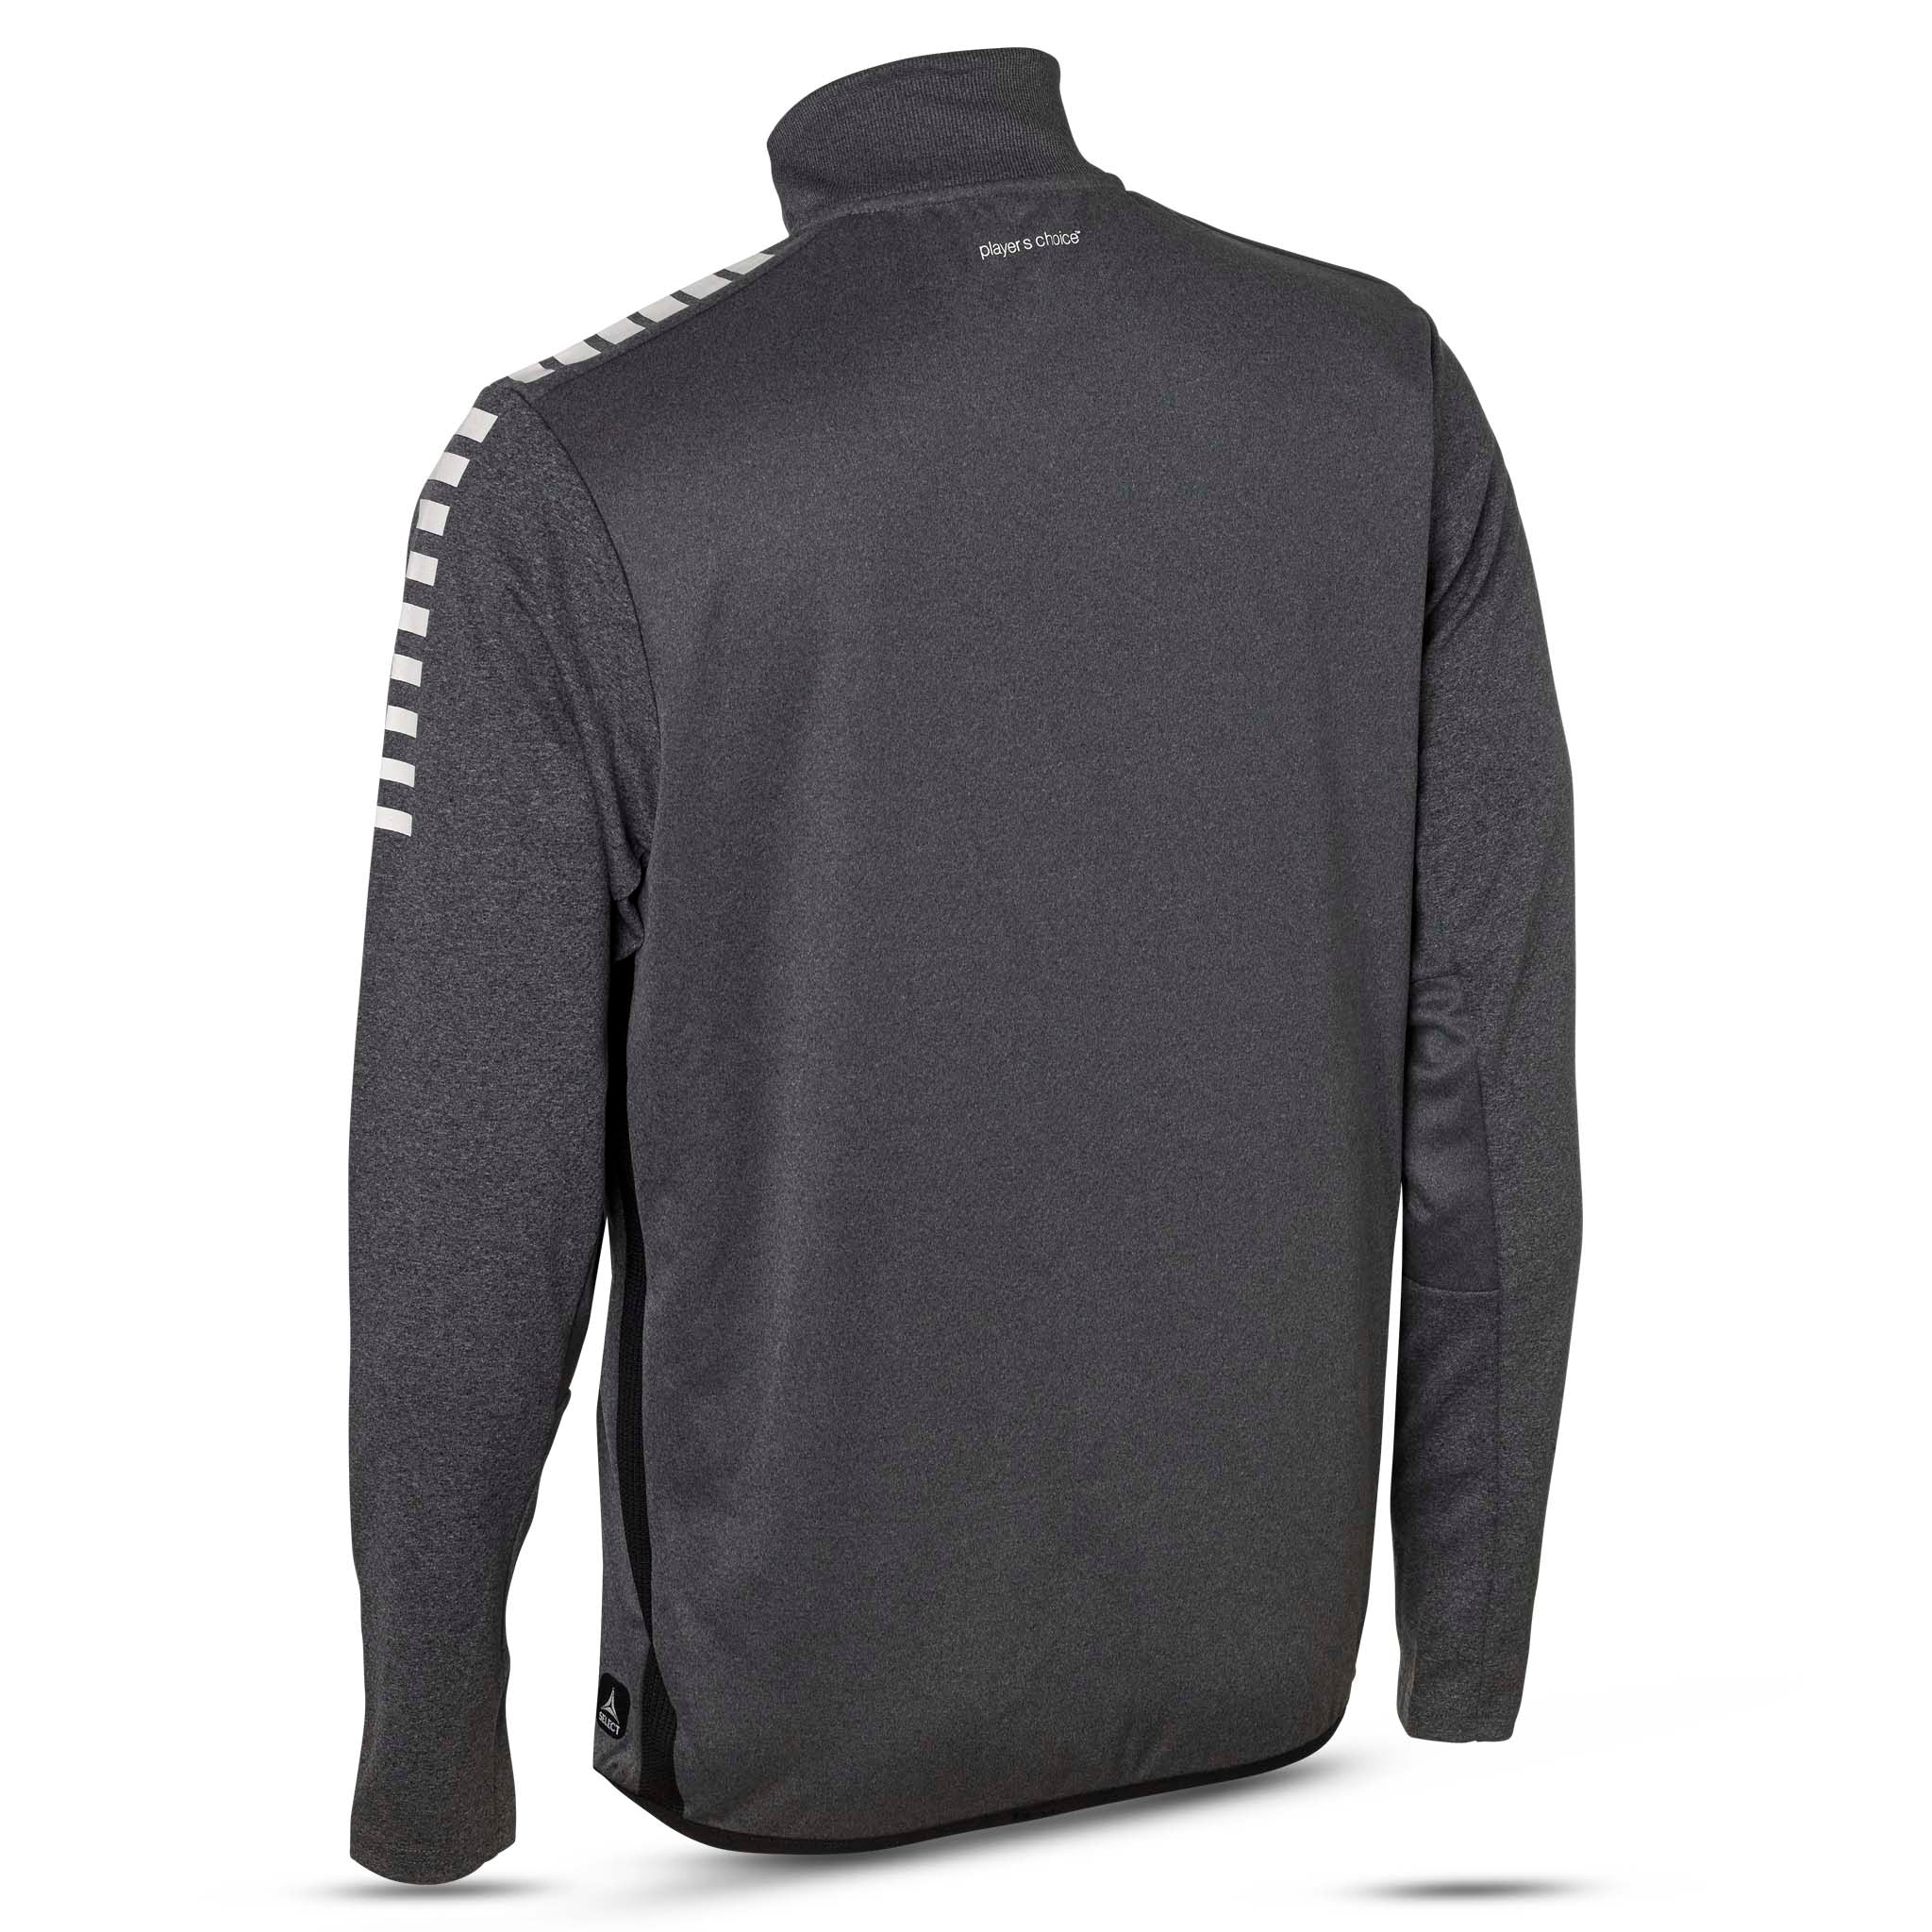 Sweatshirt för träning - Monaco #färg_grå